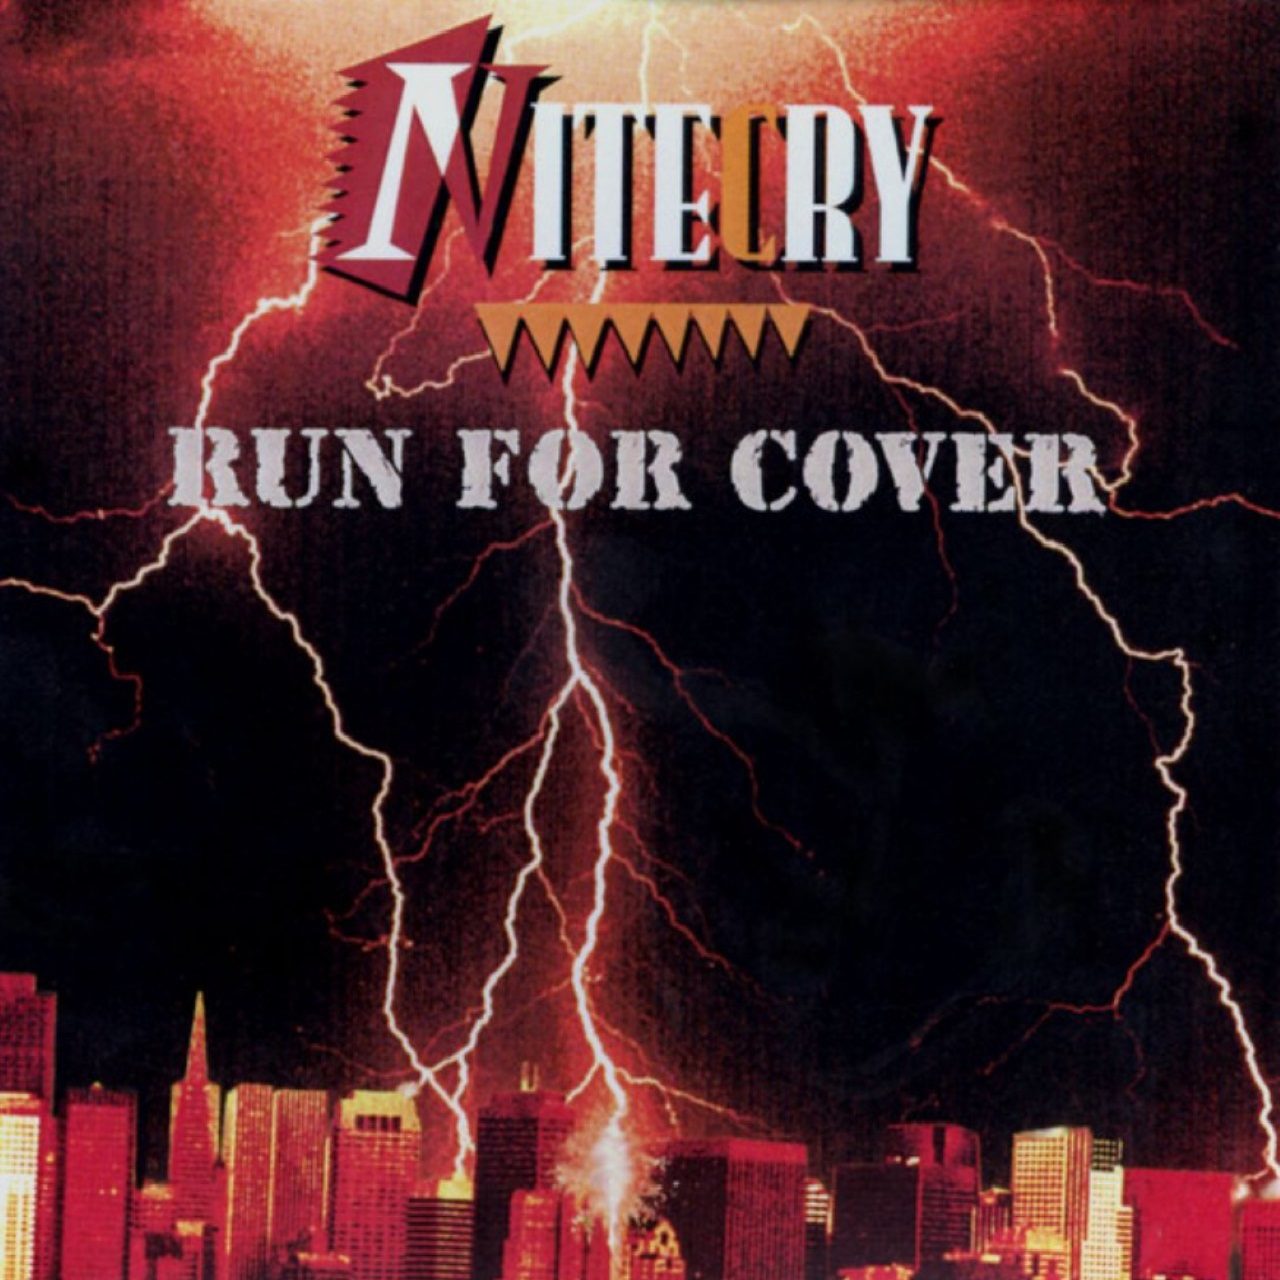 NiteCry – Run The Cover cover album